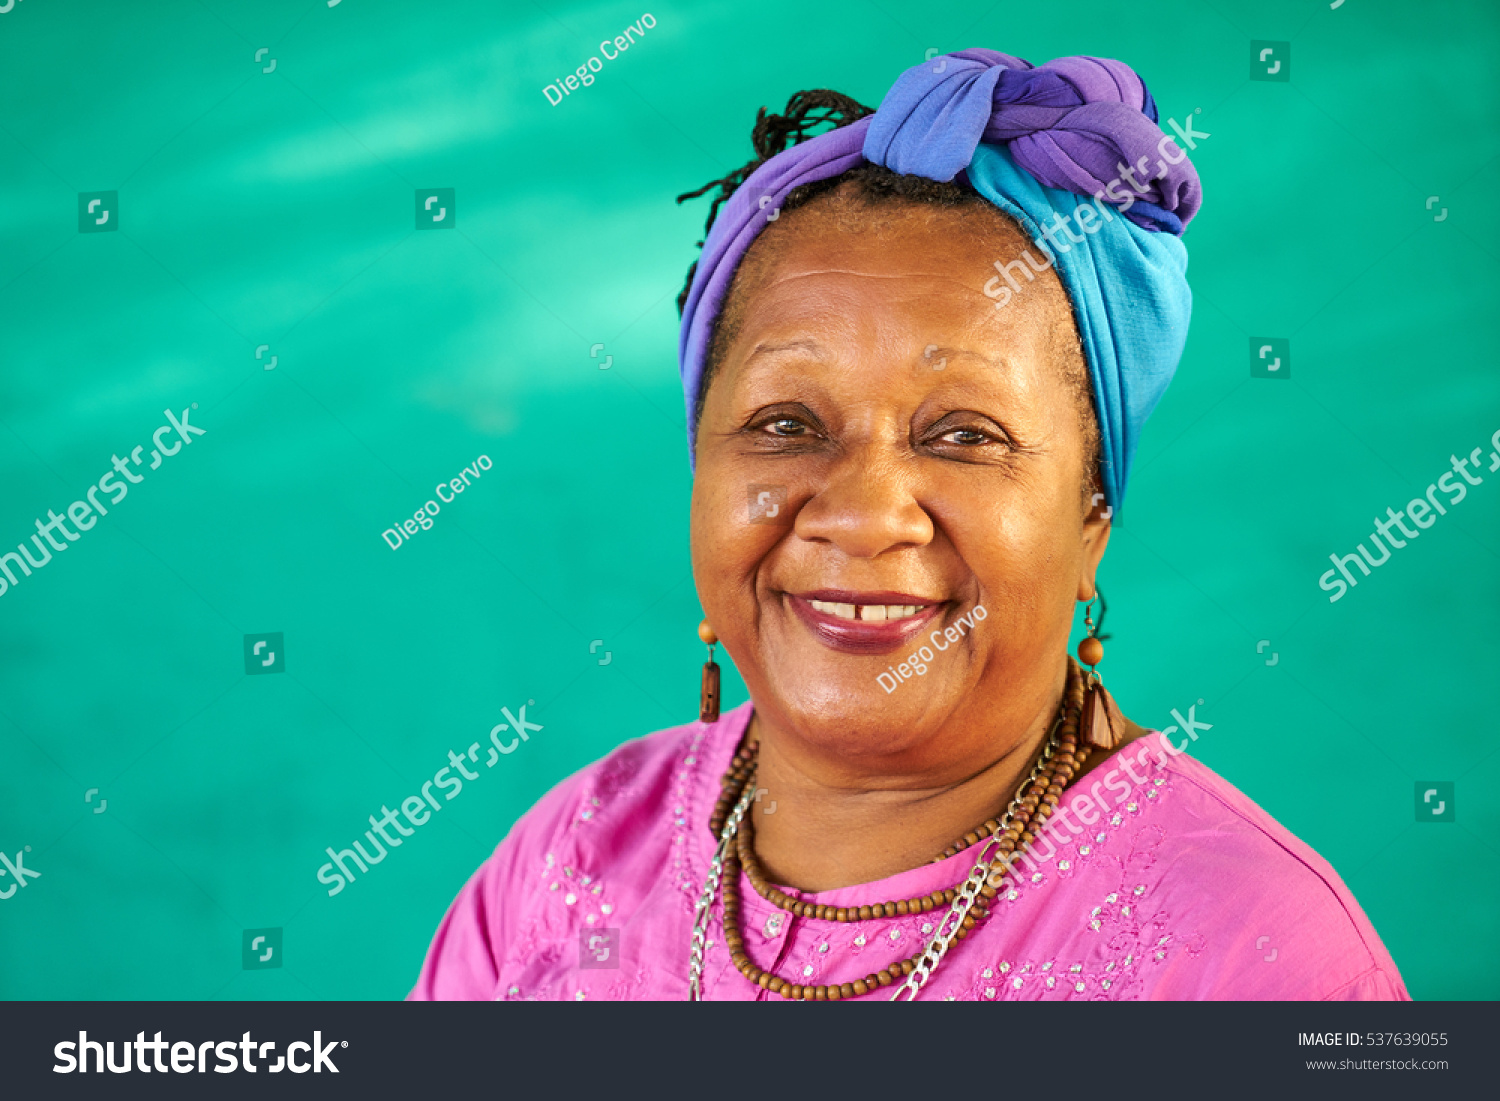 African Old Woman Bilder Stockfotos Und Vektorgrafiken Shutterstock